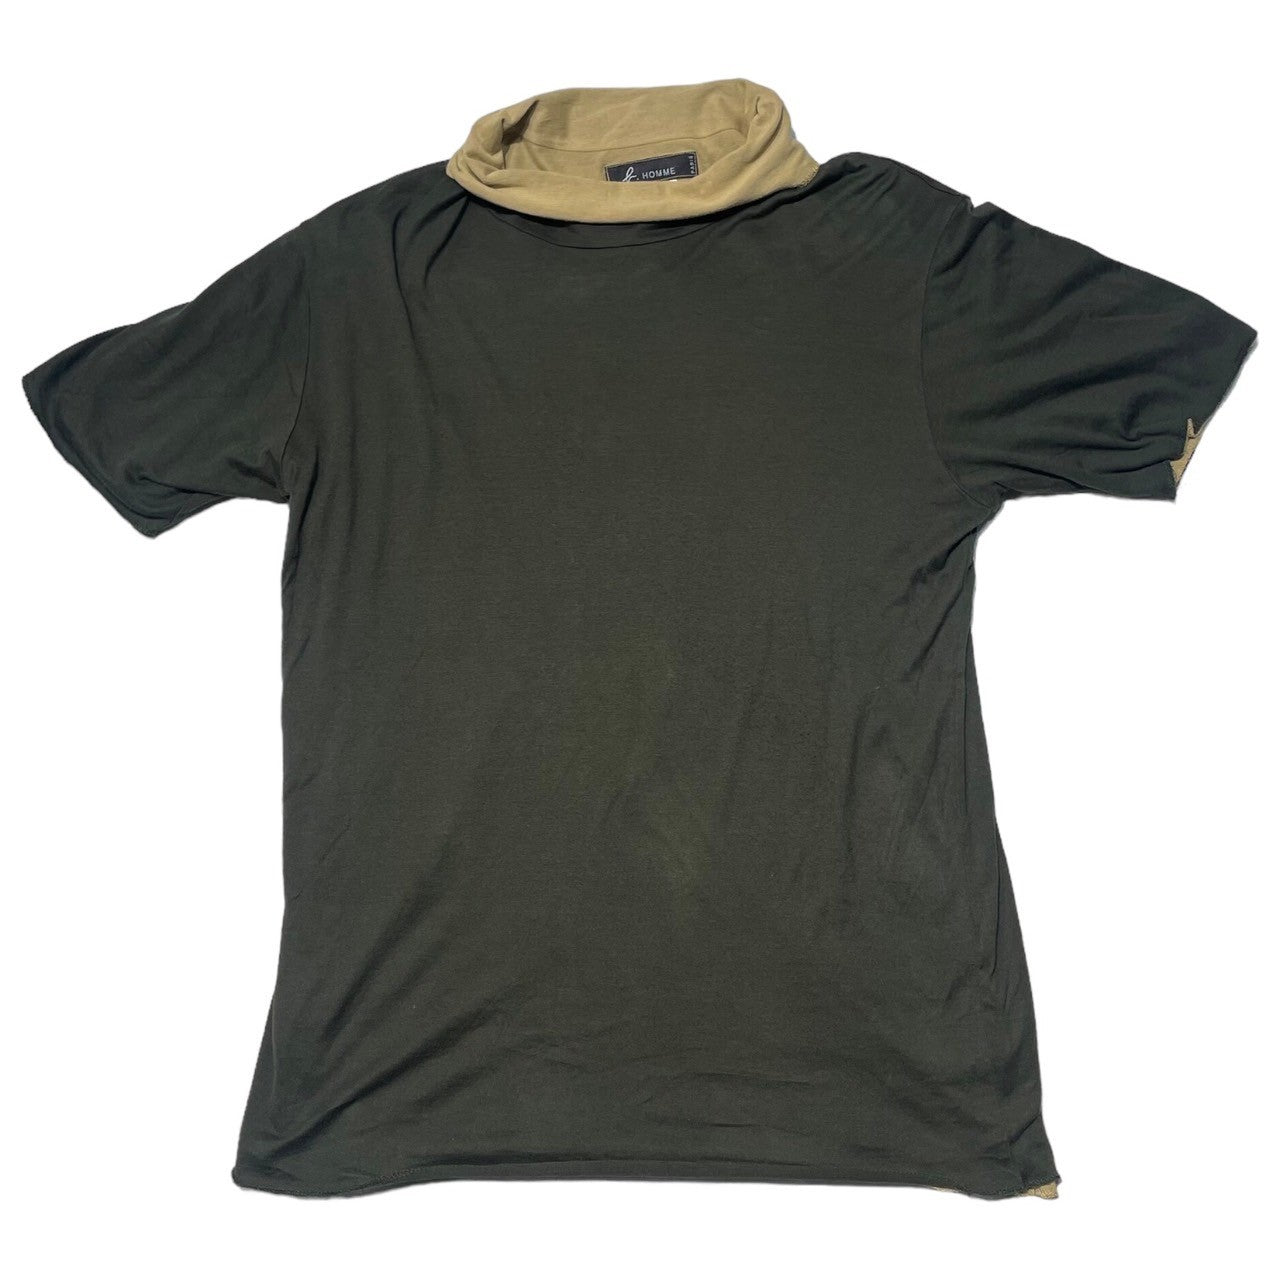 Agnes b. homme(アニエスベーオム) 90's Layered type high neck T-shirt  レイヤードタイプハイネックTシャツ 90年代 1(S) カーキ×ベージュ